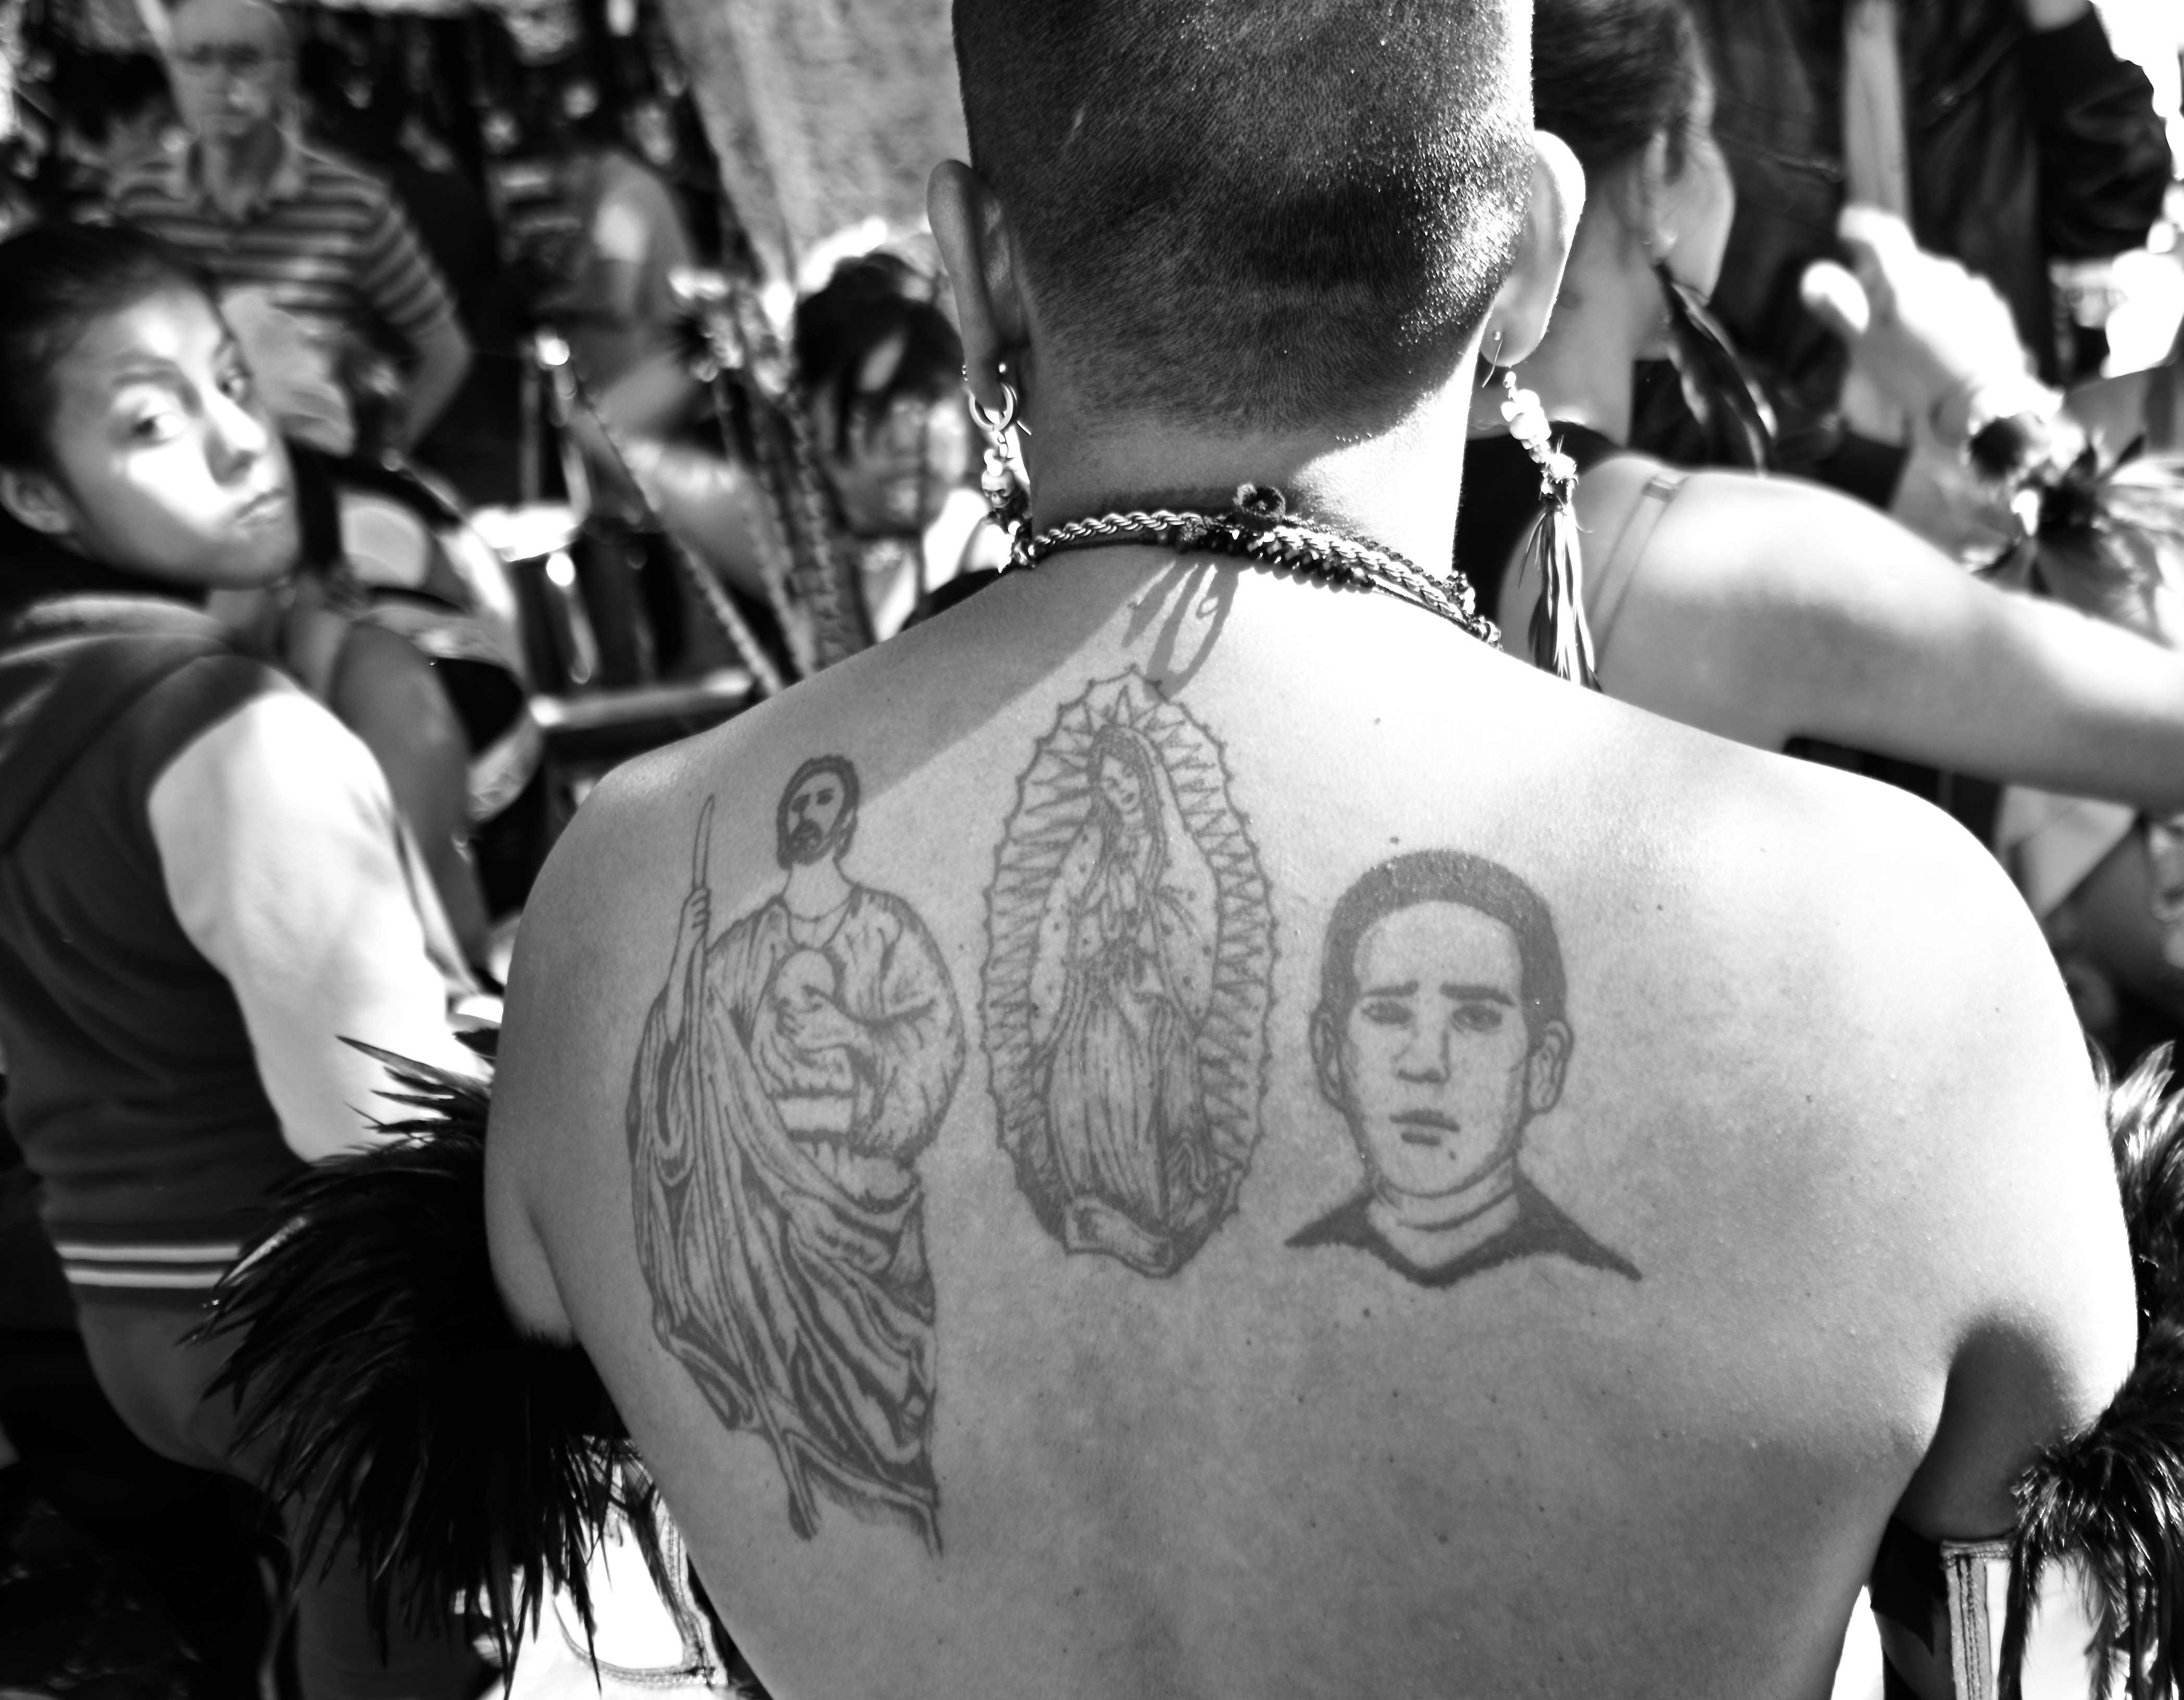 St.Michael Tattoo Artist